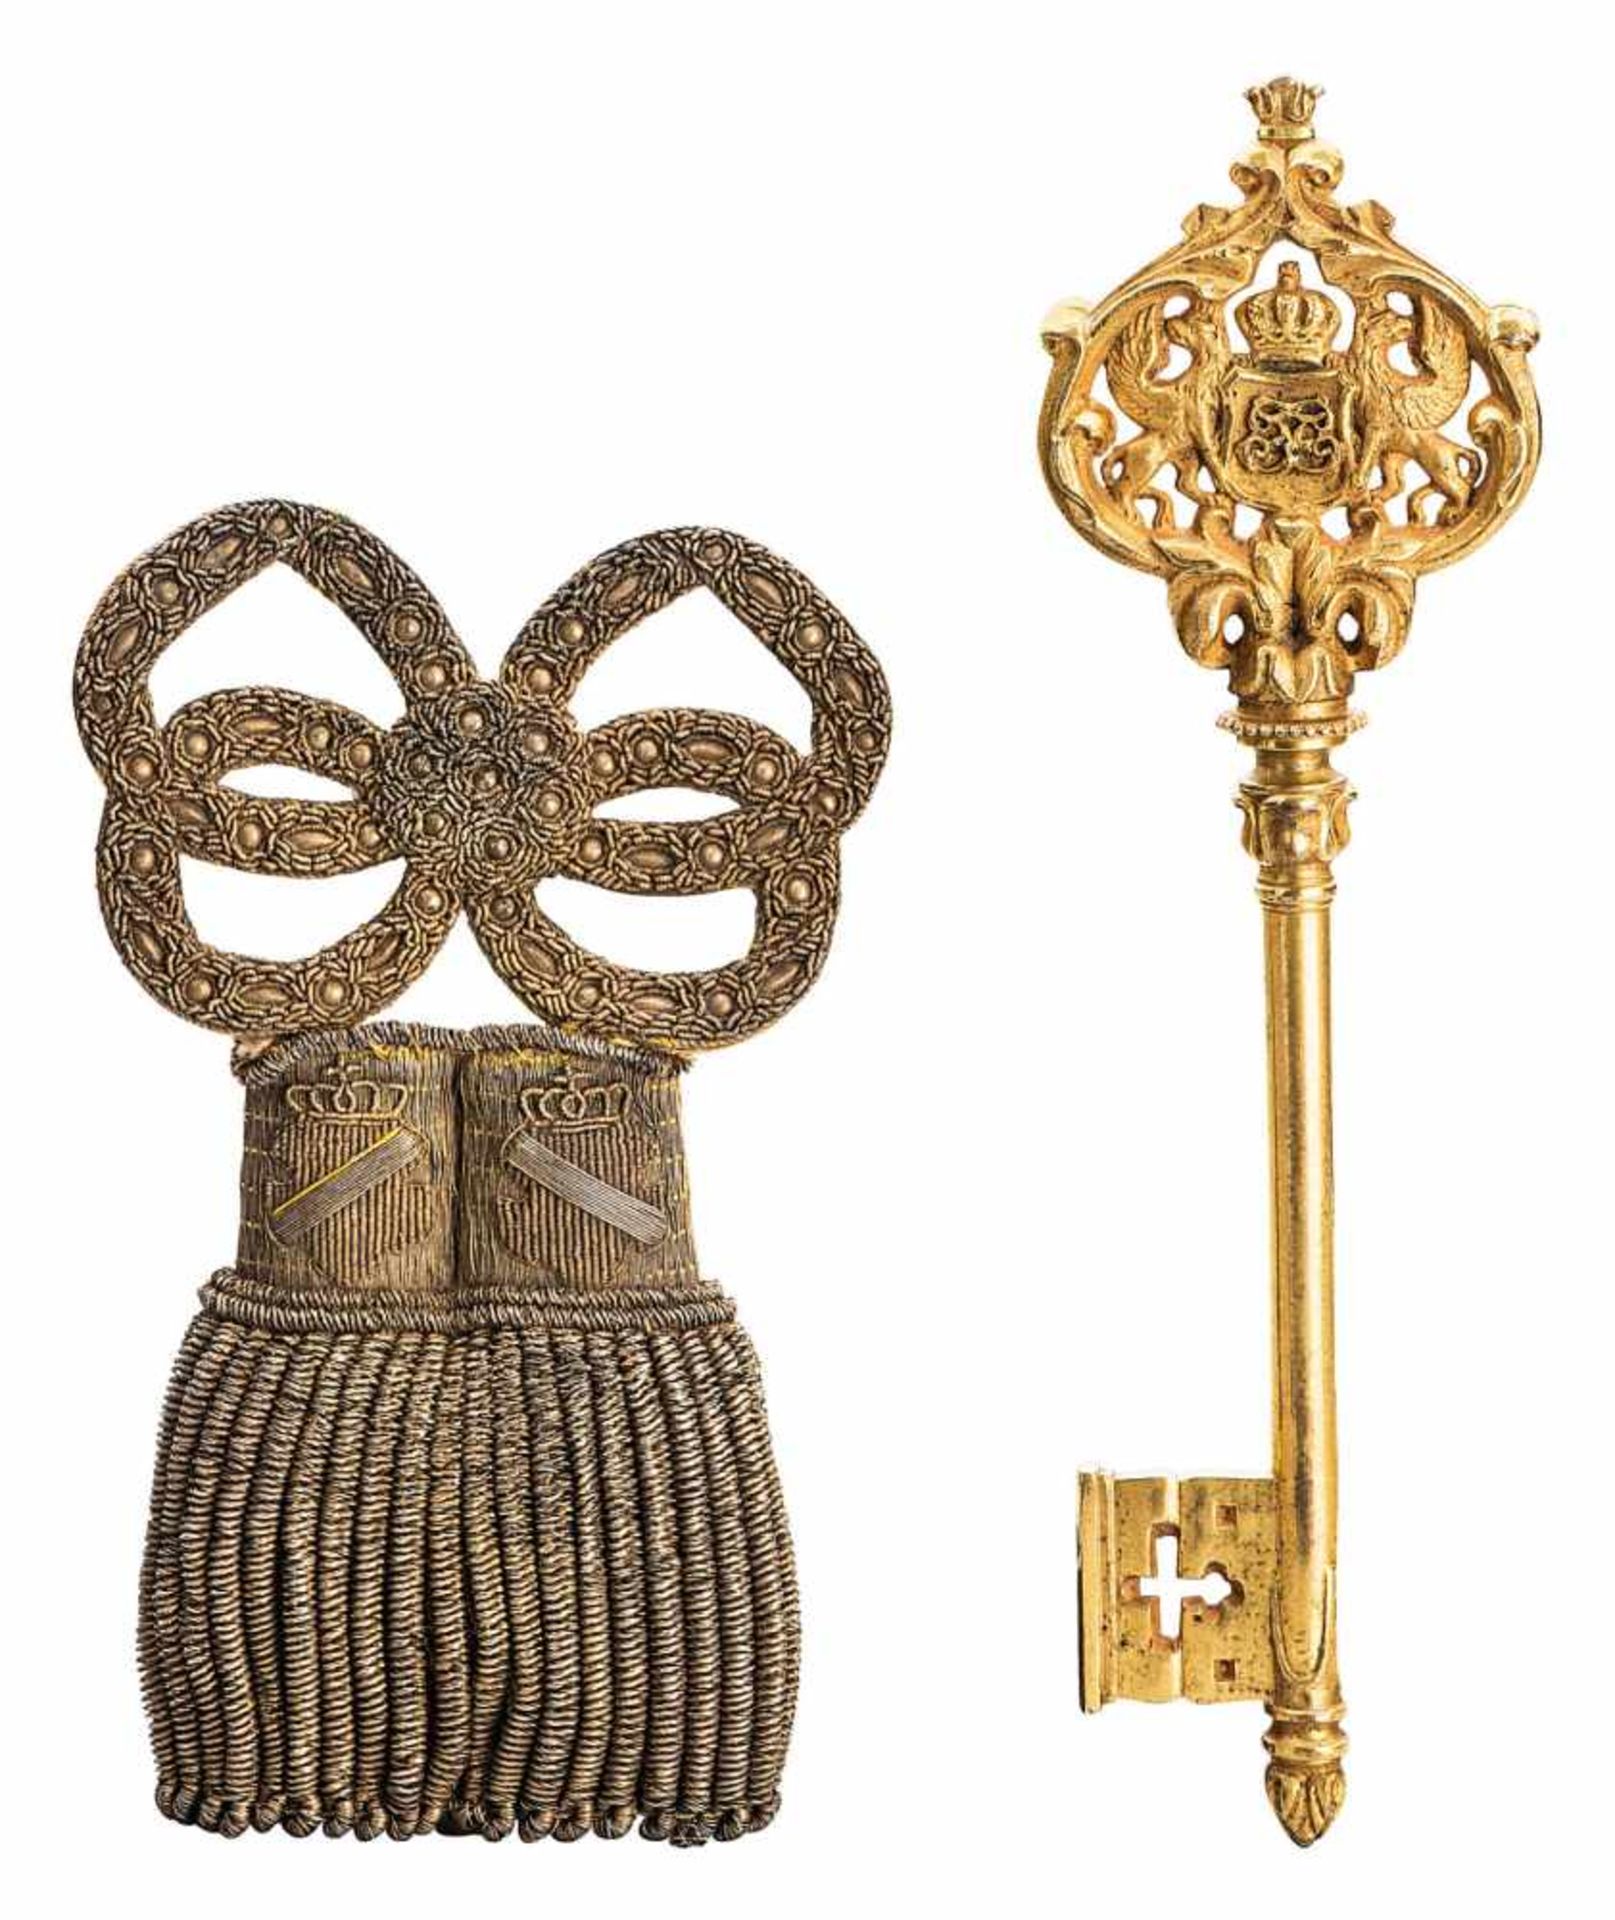 Kammerherrenschlüssel und Portepee aus der Regierungszeit Großherzog Friedrich I.Baden 1852 -